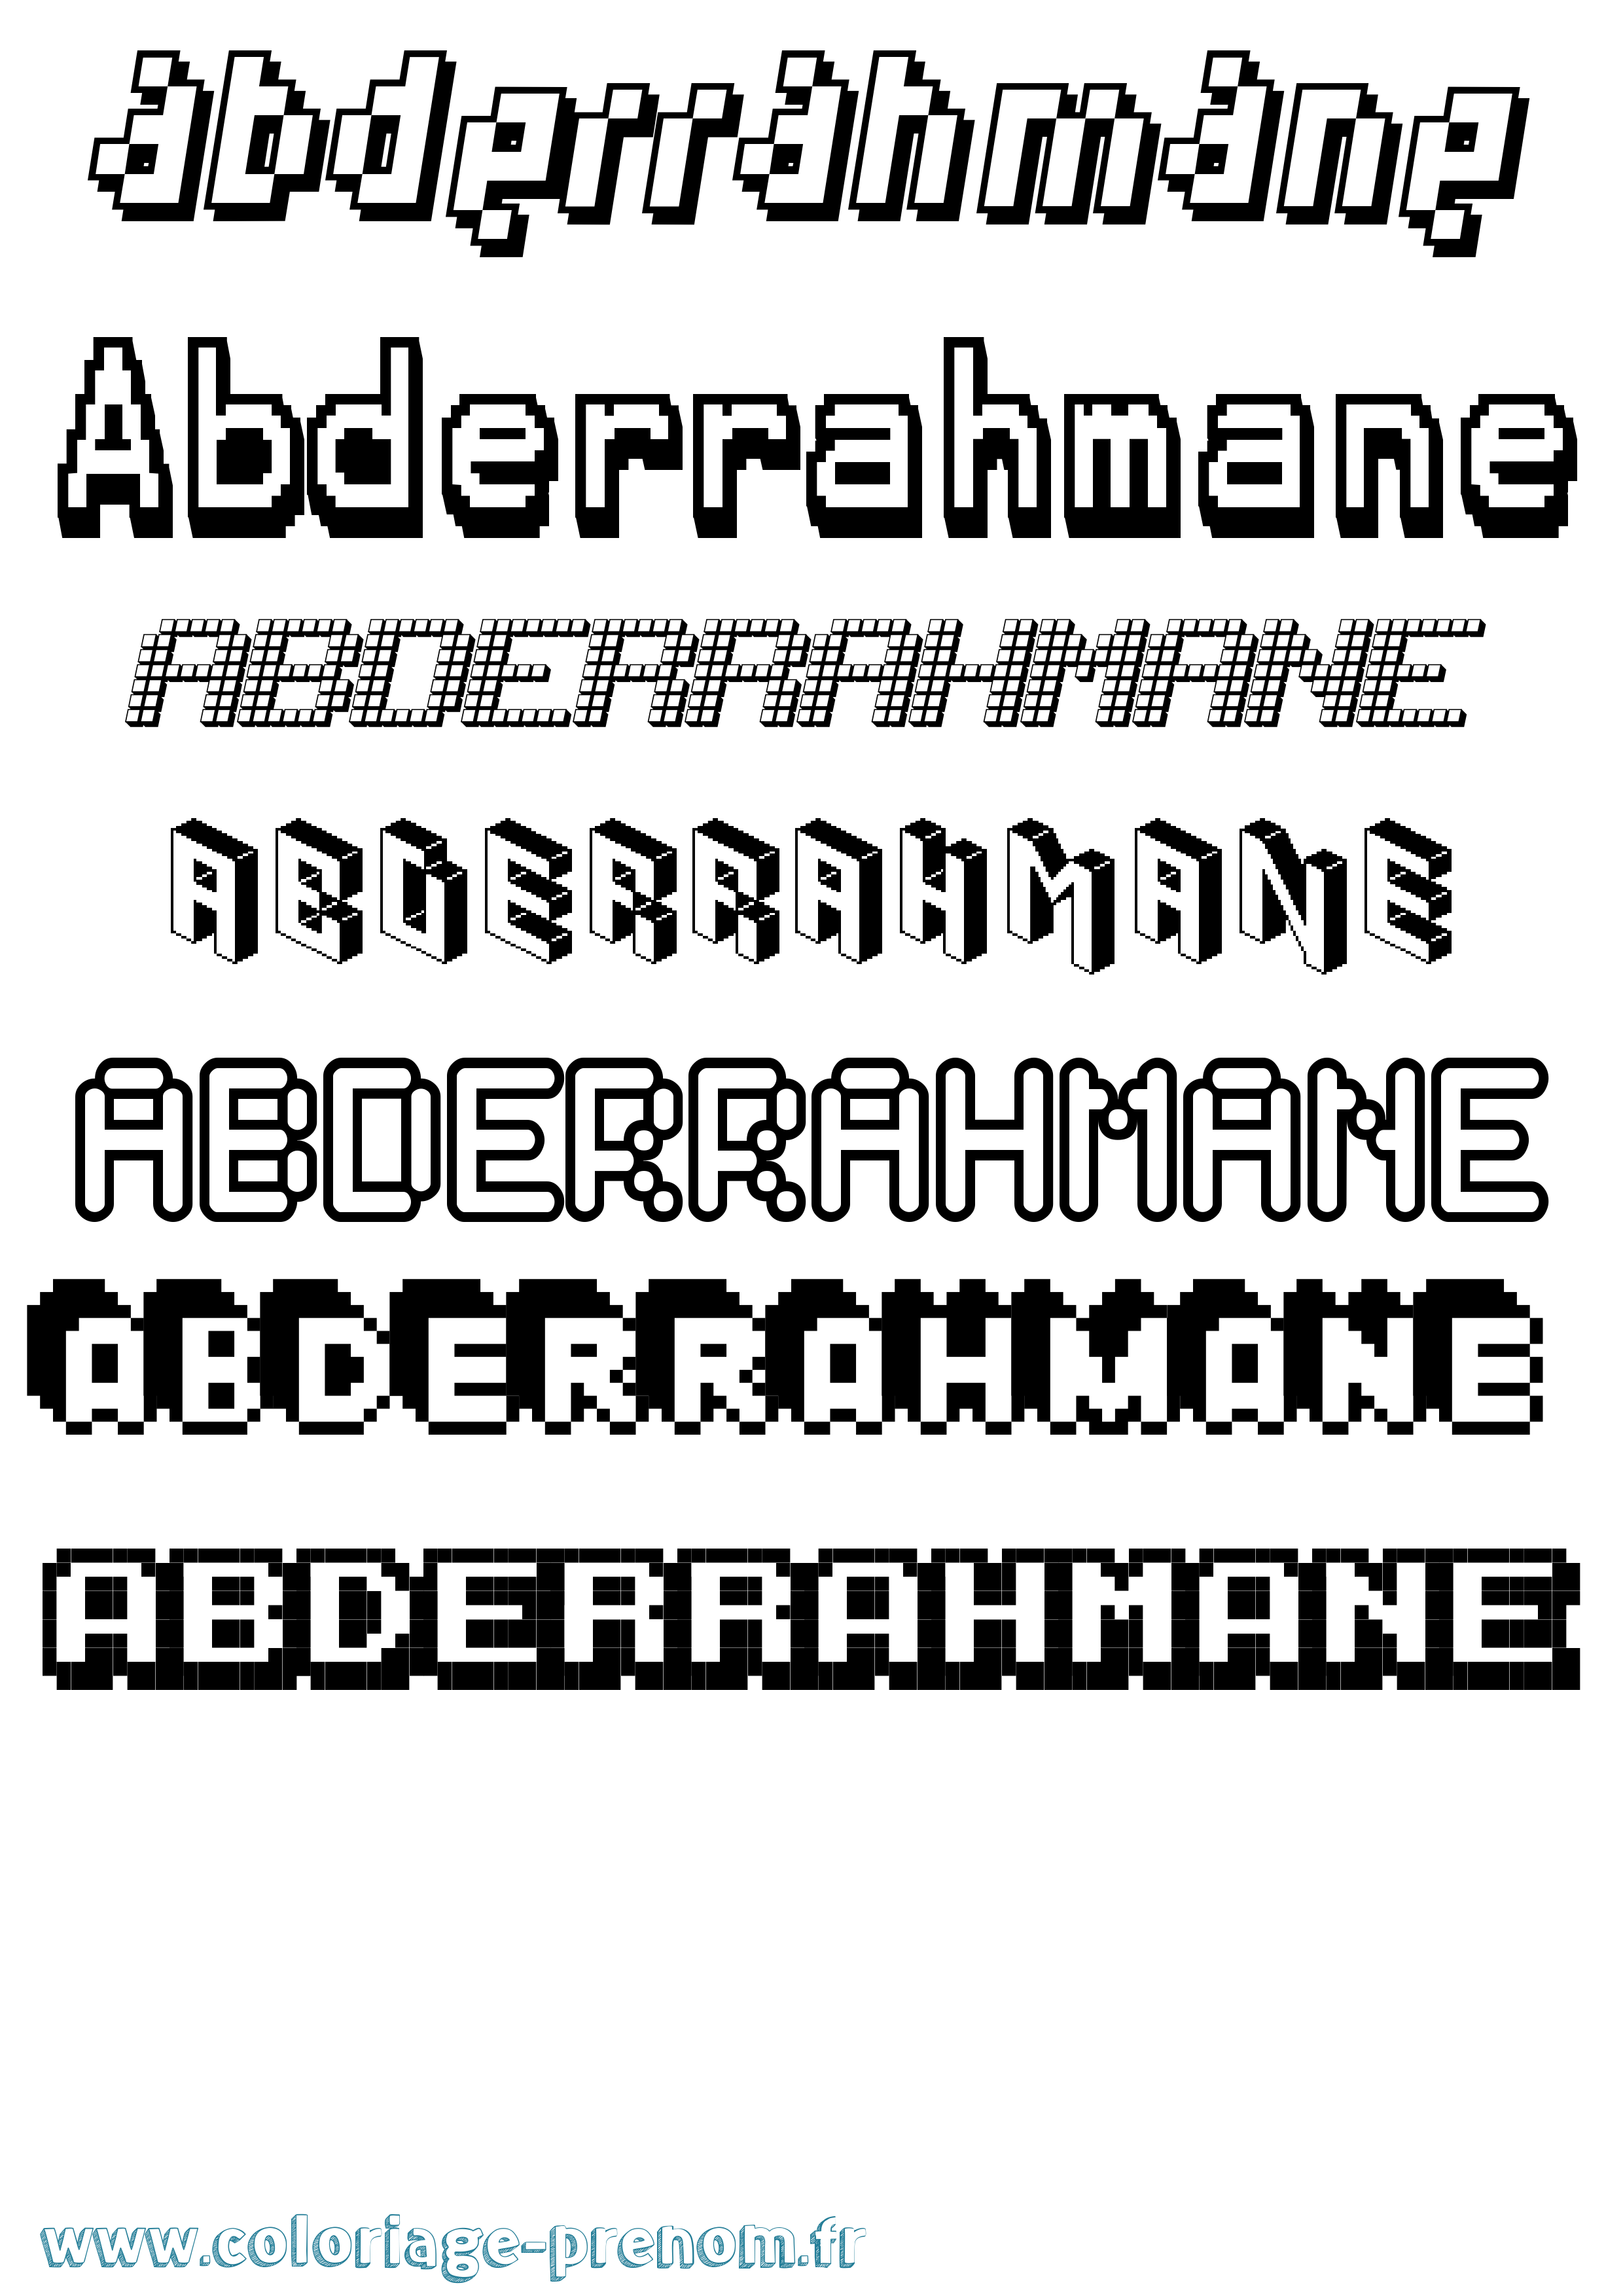 Coloriage prénom Abderrahmane